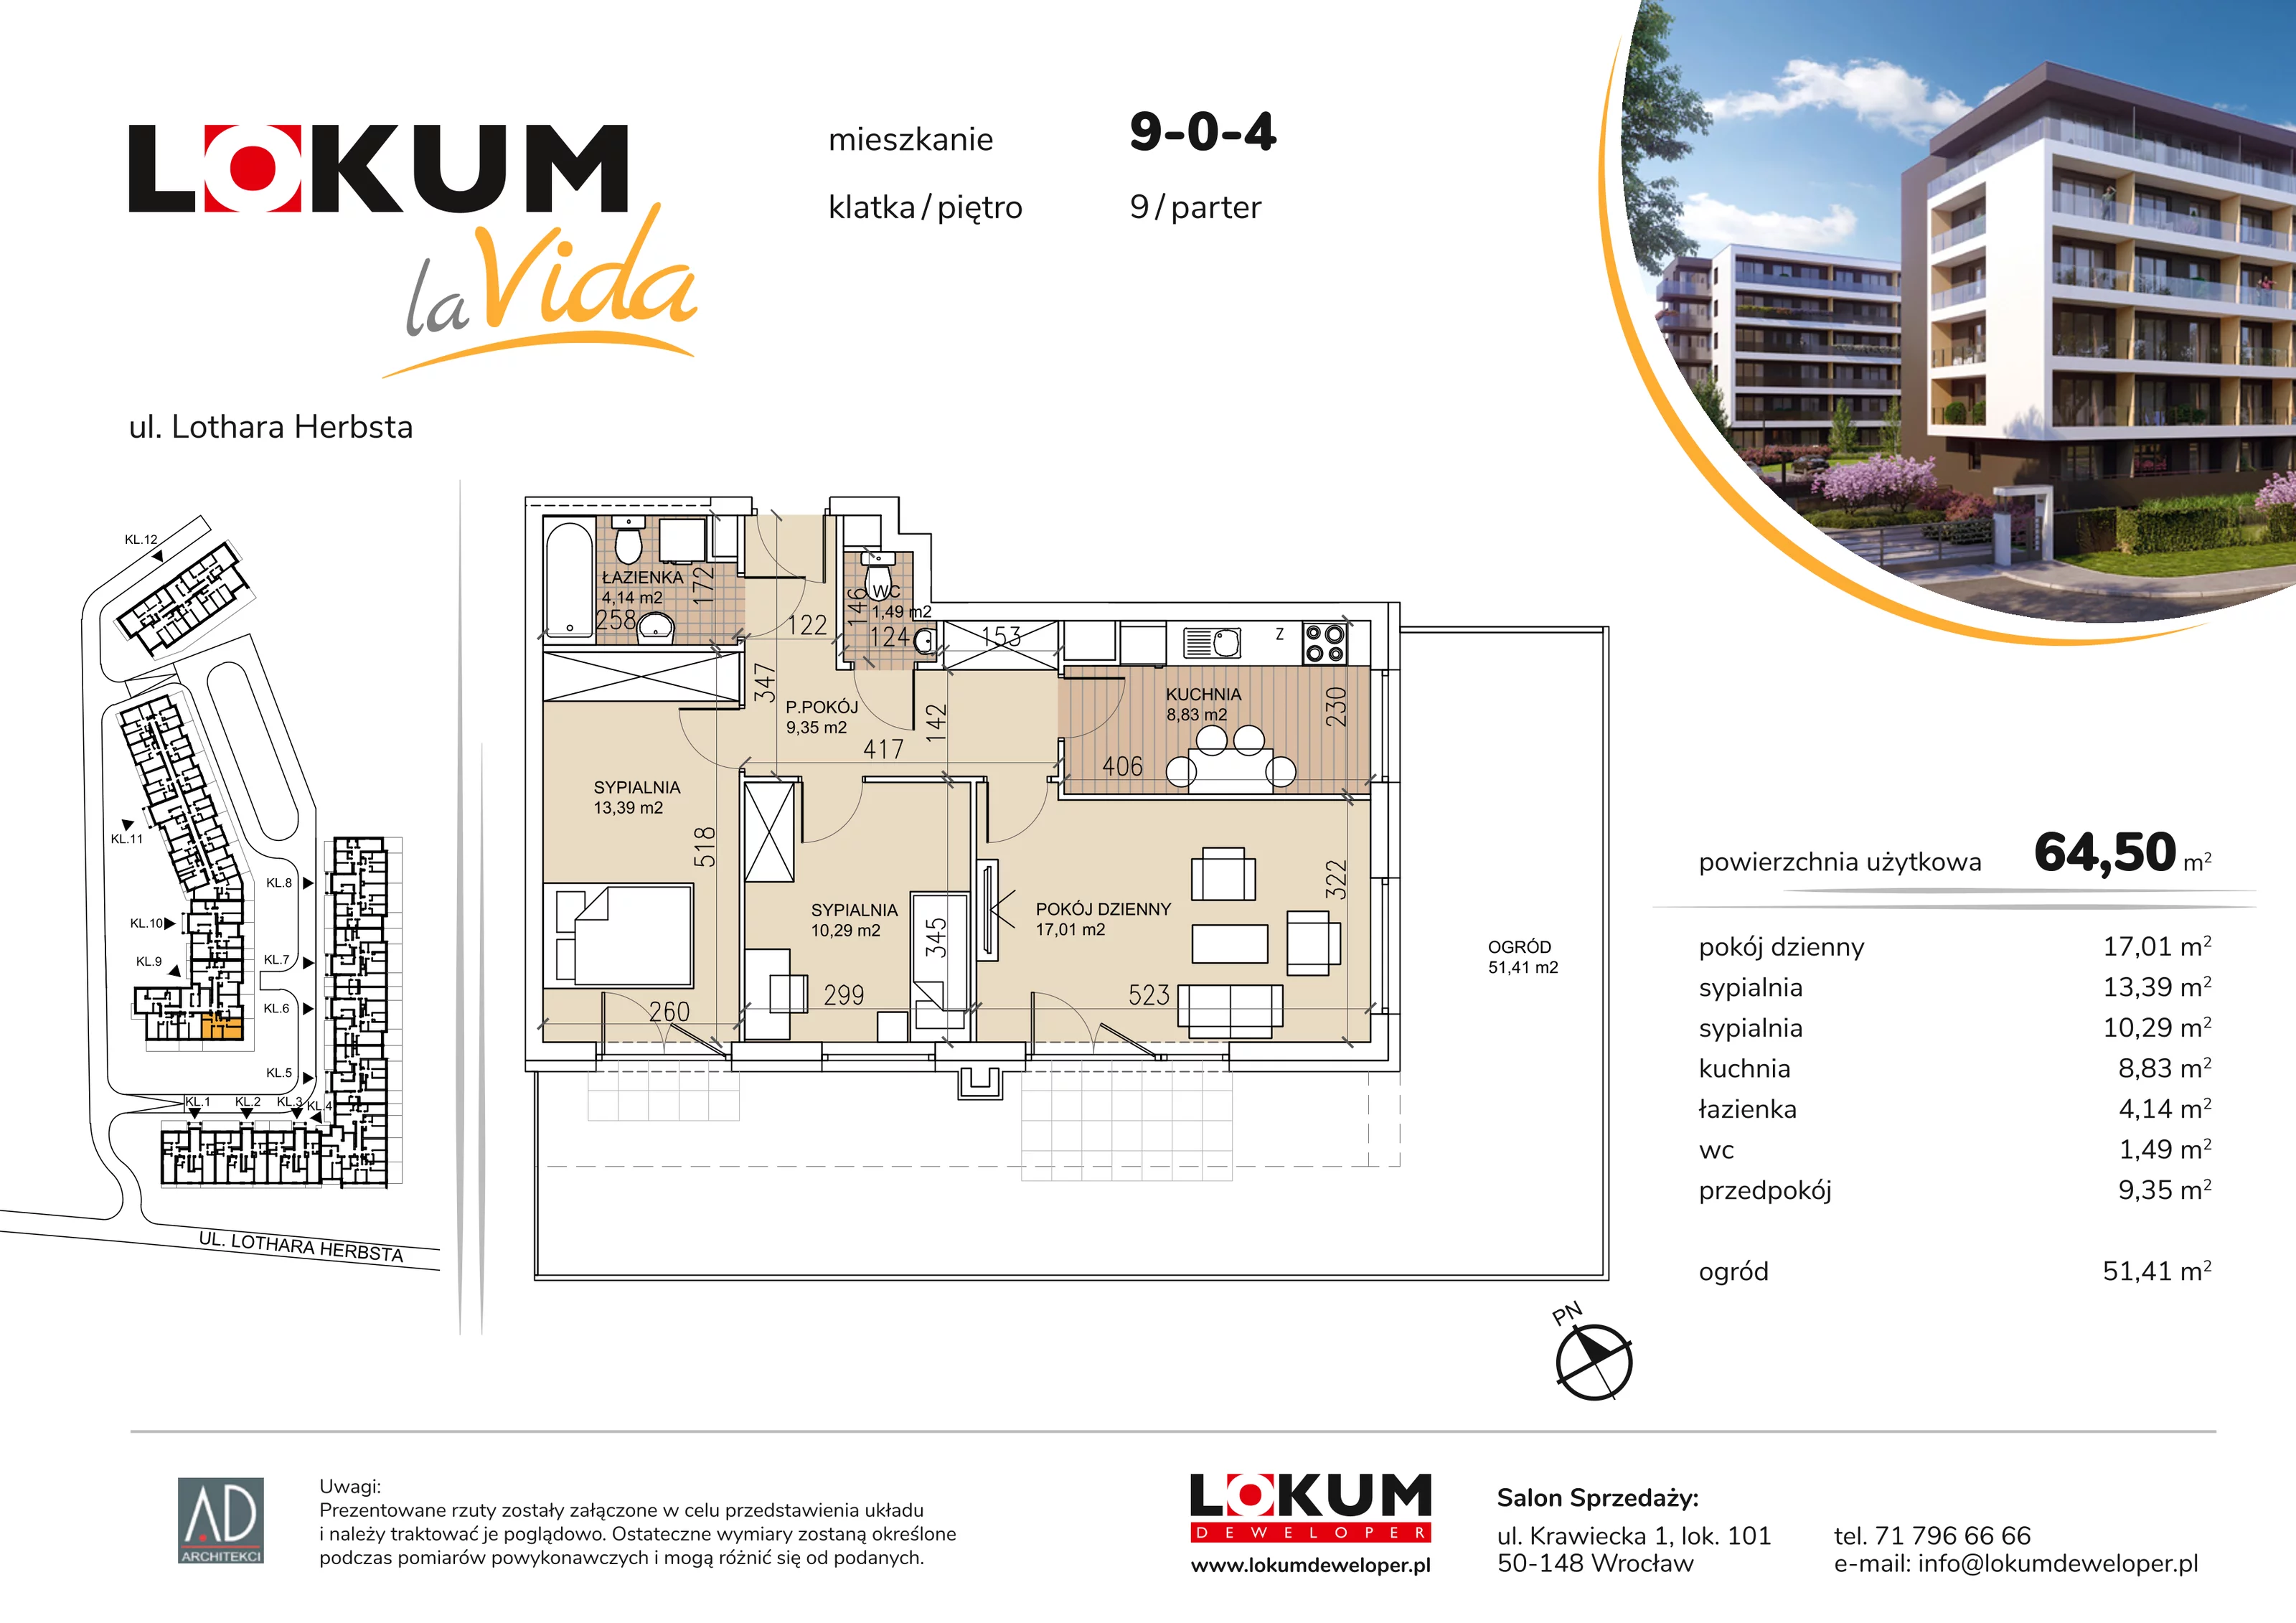 Mieszkanie 64,50 m², parter, oferta nr 9-0-4, Lokum la Vida, Wrocław, Sołtysowice, ul. Lothara Herbsta